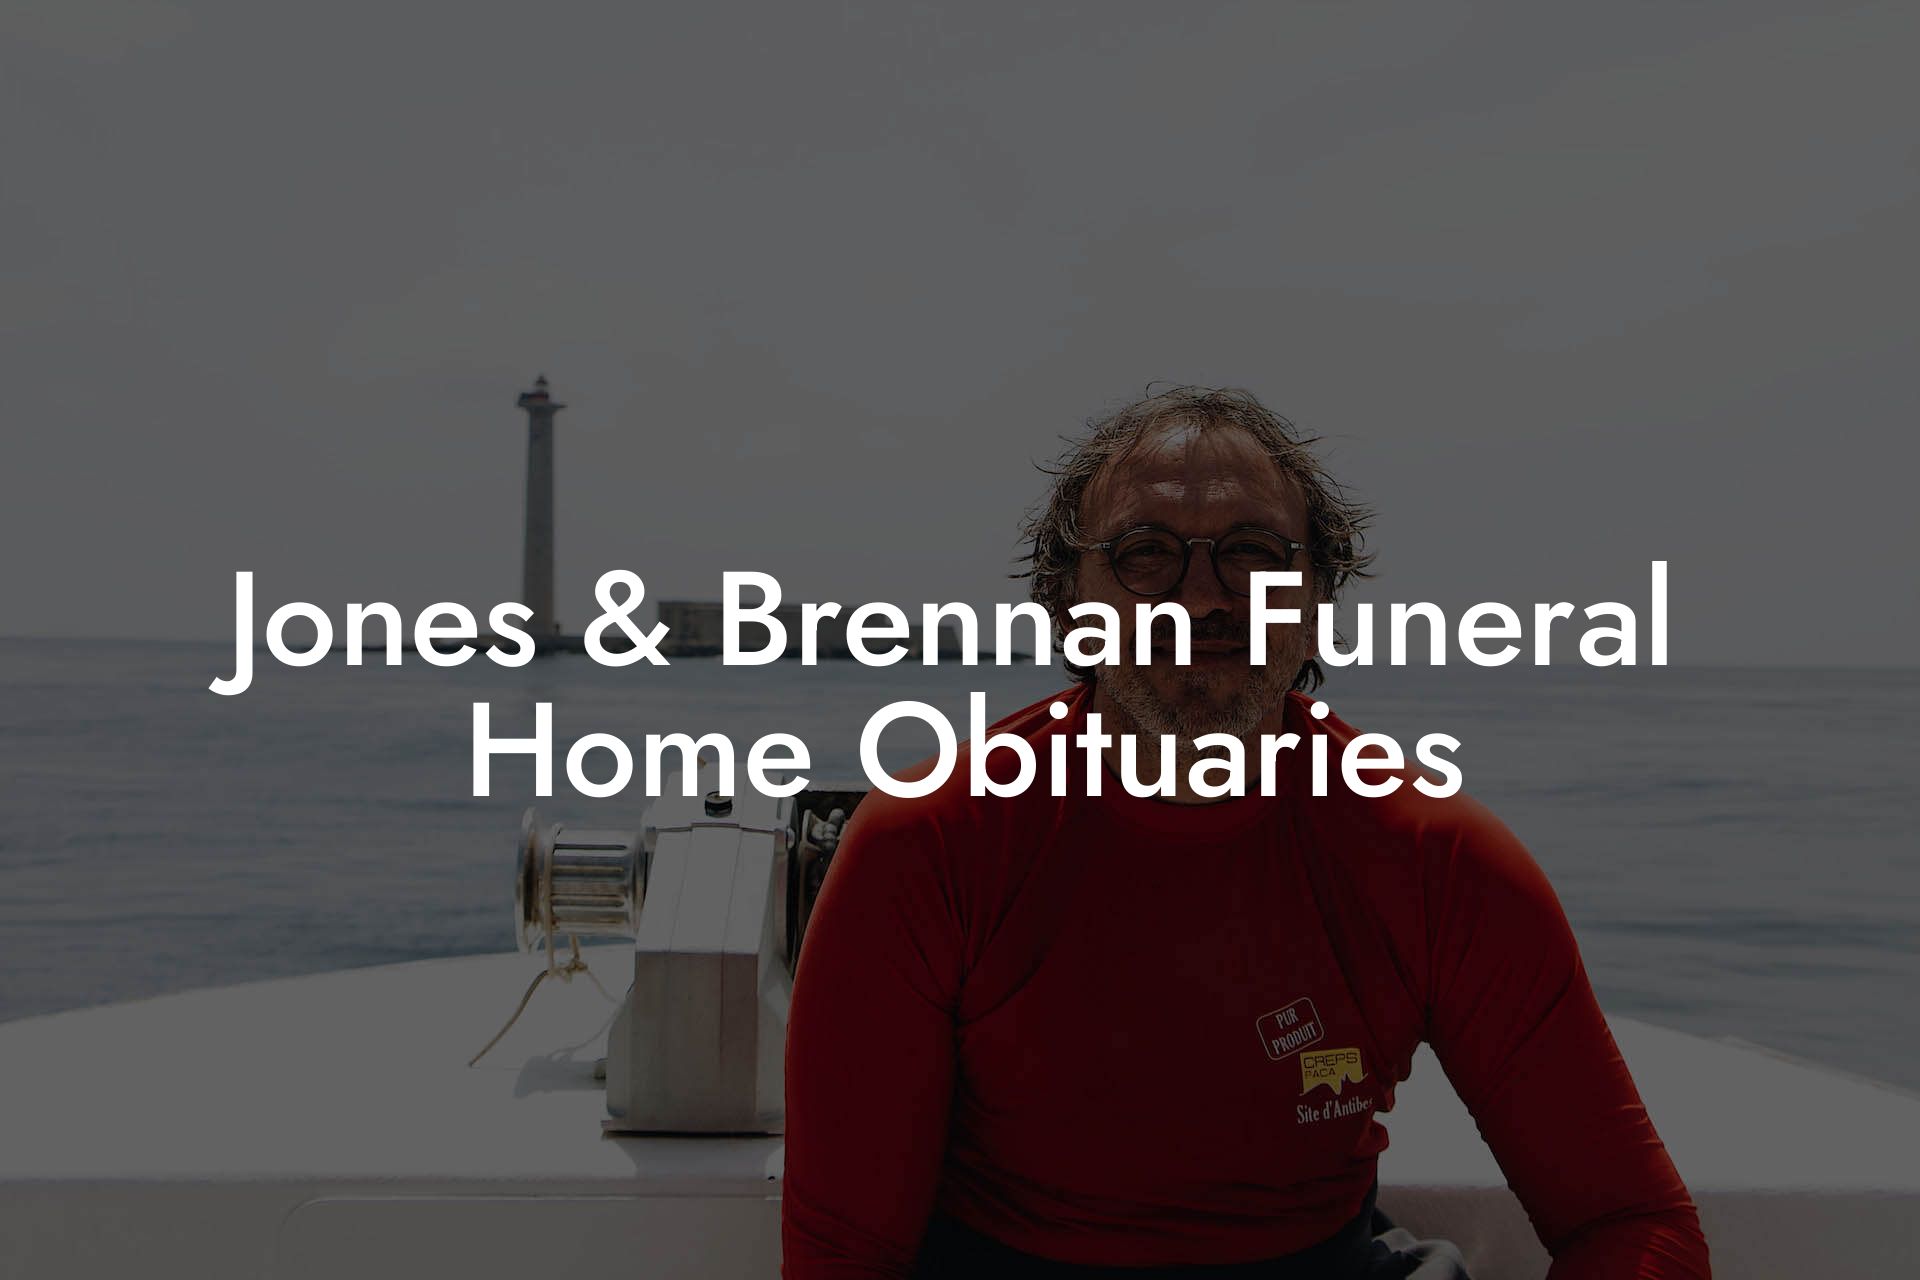 Jones & Brennan Funeral Home Obituaries